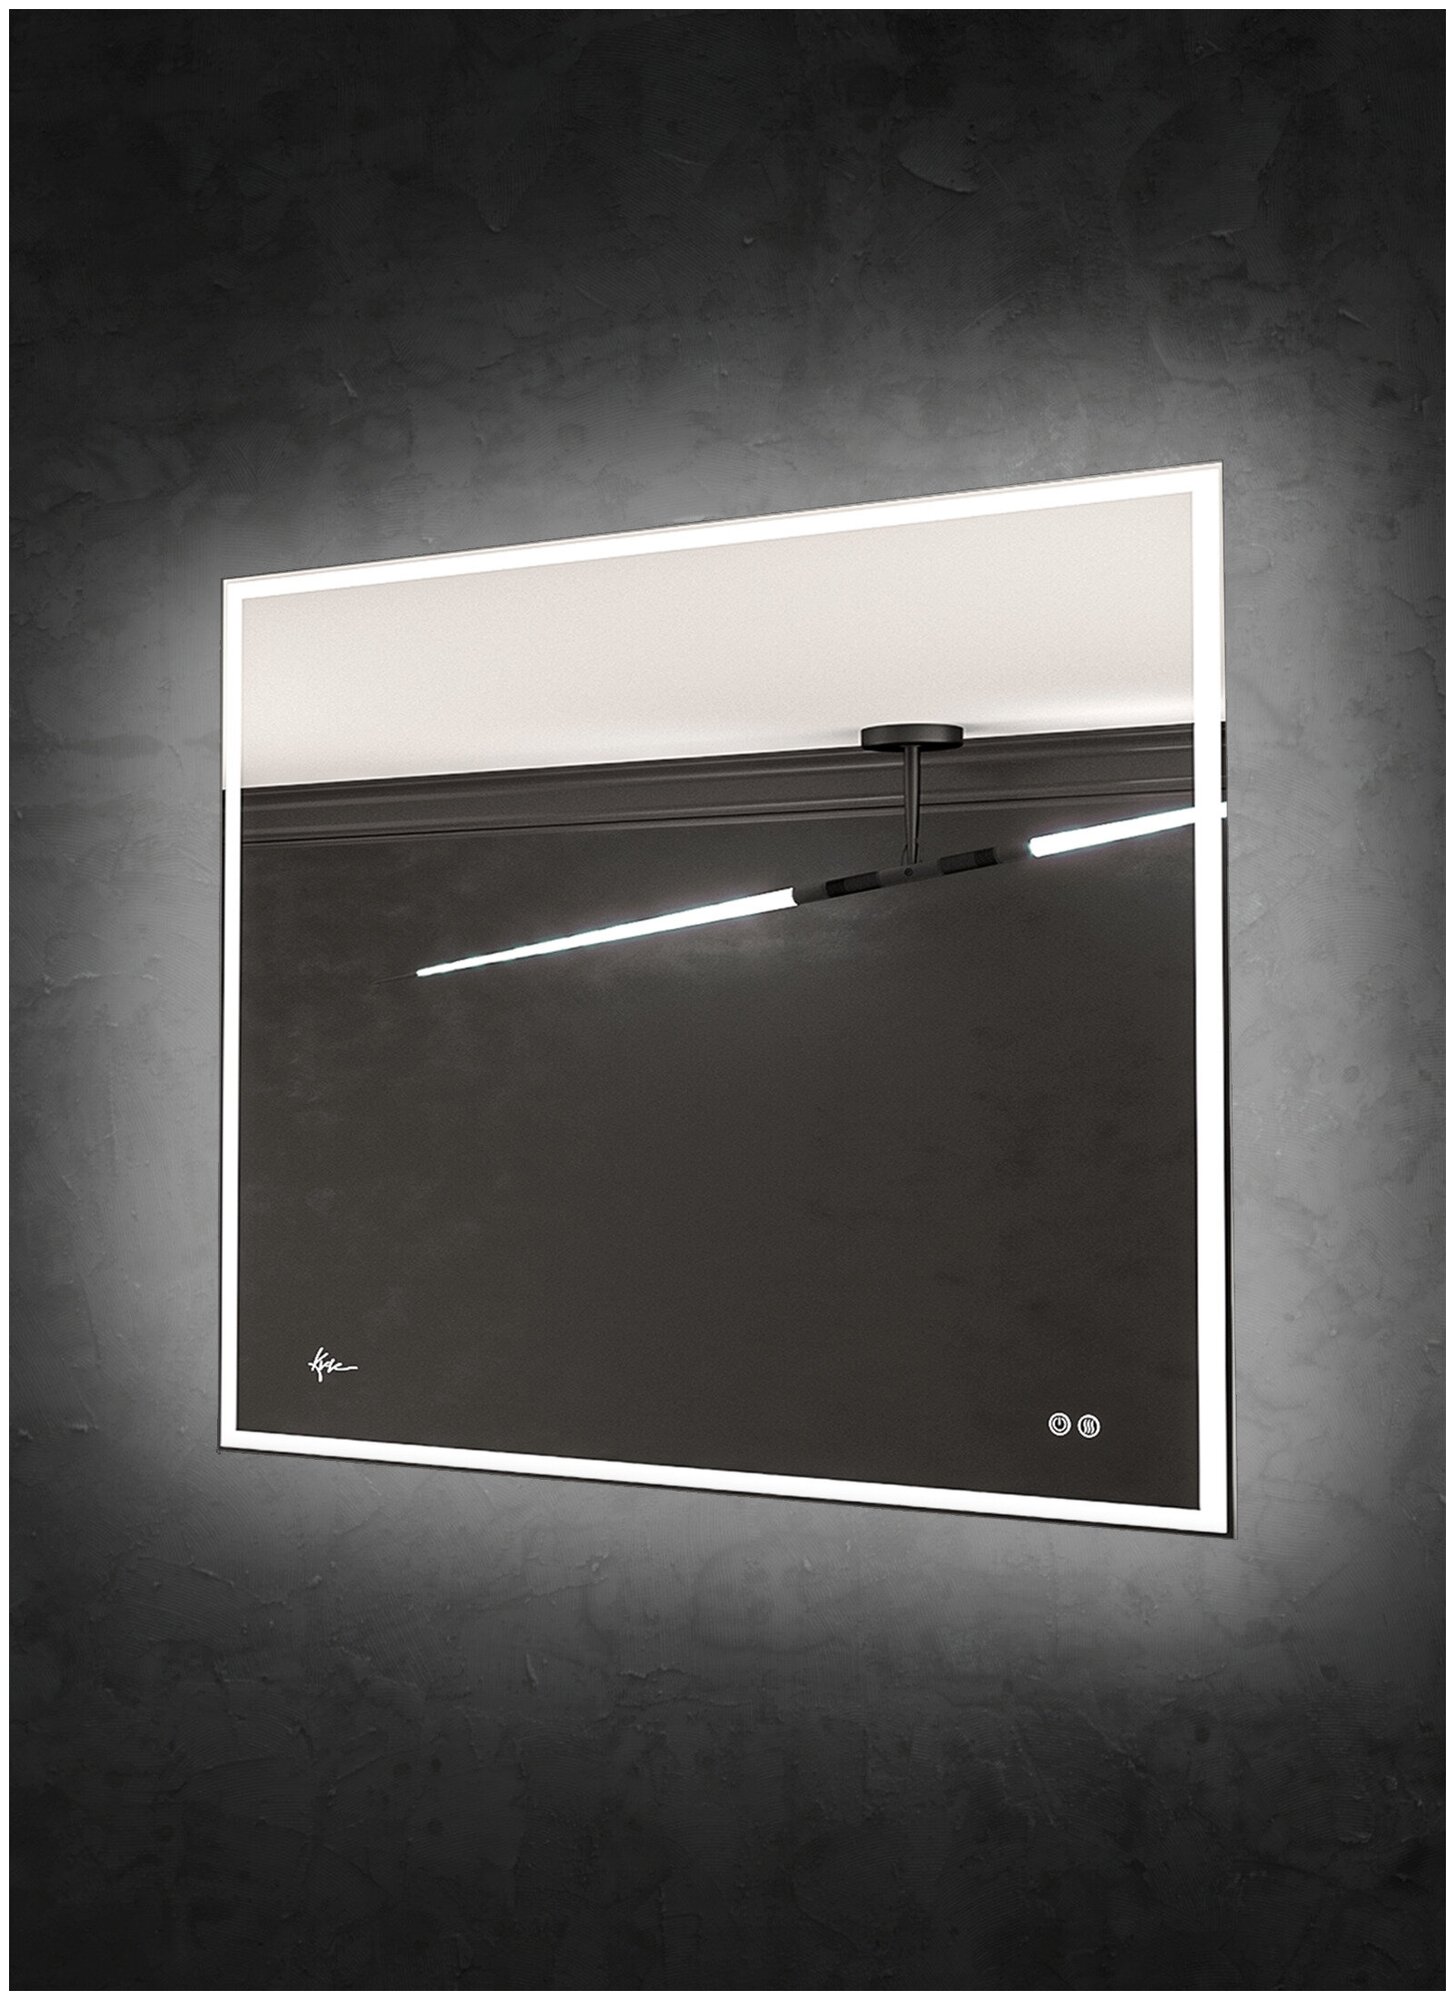 Зеркало с лед подсветкой Neapol 70*90 см влагостойкое зеркало в ванную комнату с сенсорным выключателем LED подсветки и функцией антизапотевания